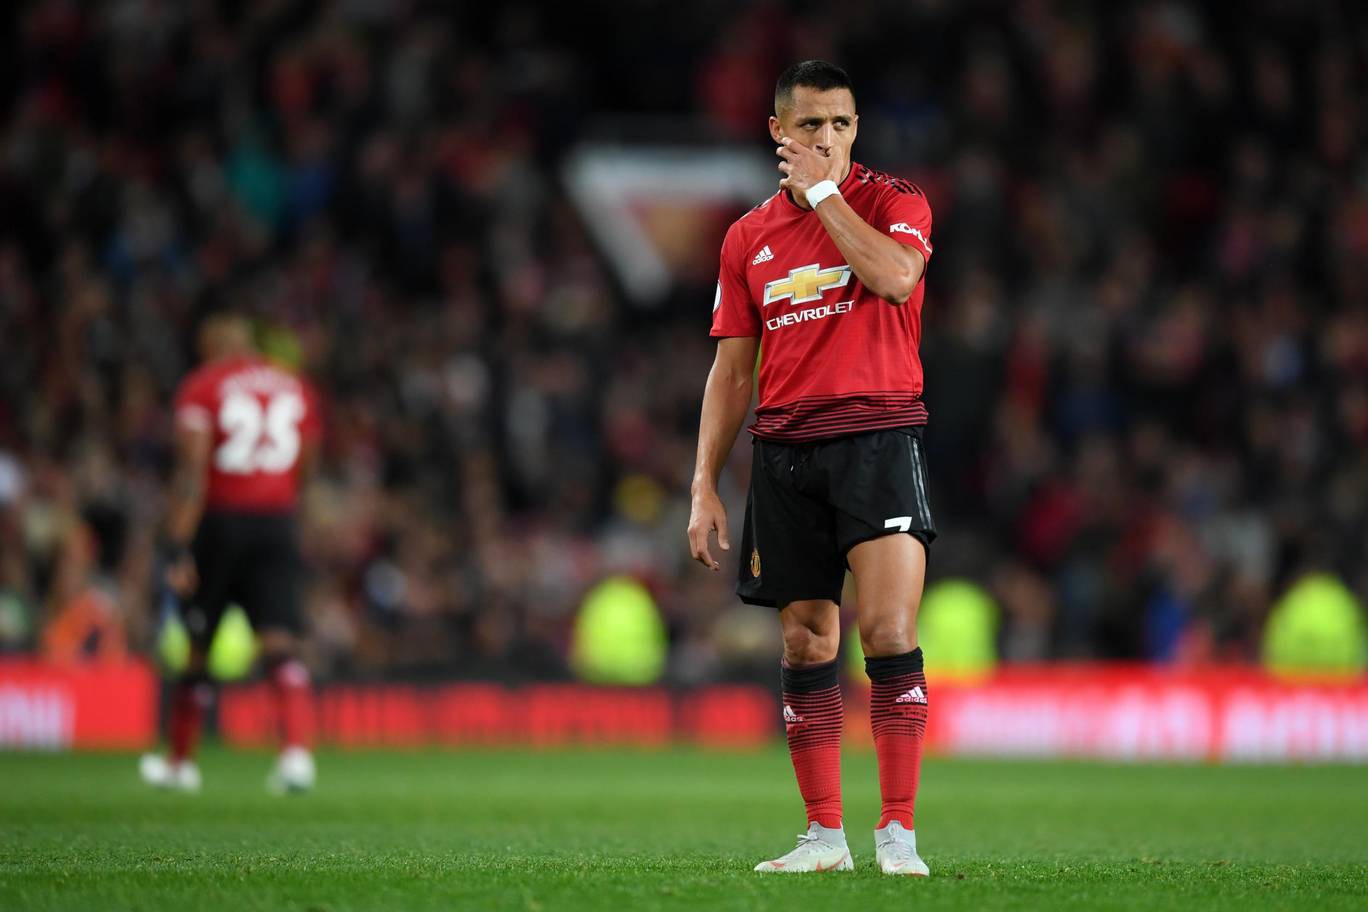 Nhà cái ra kèo Sanchez rời Man Utd trong tháng 1/2019 vì không chịu nổi áp lực từ áo số 7 - Ảnh 2.